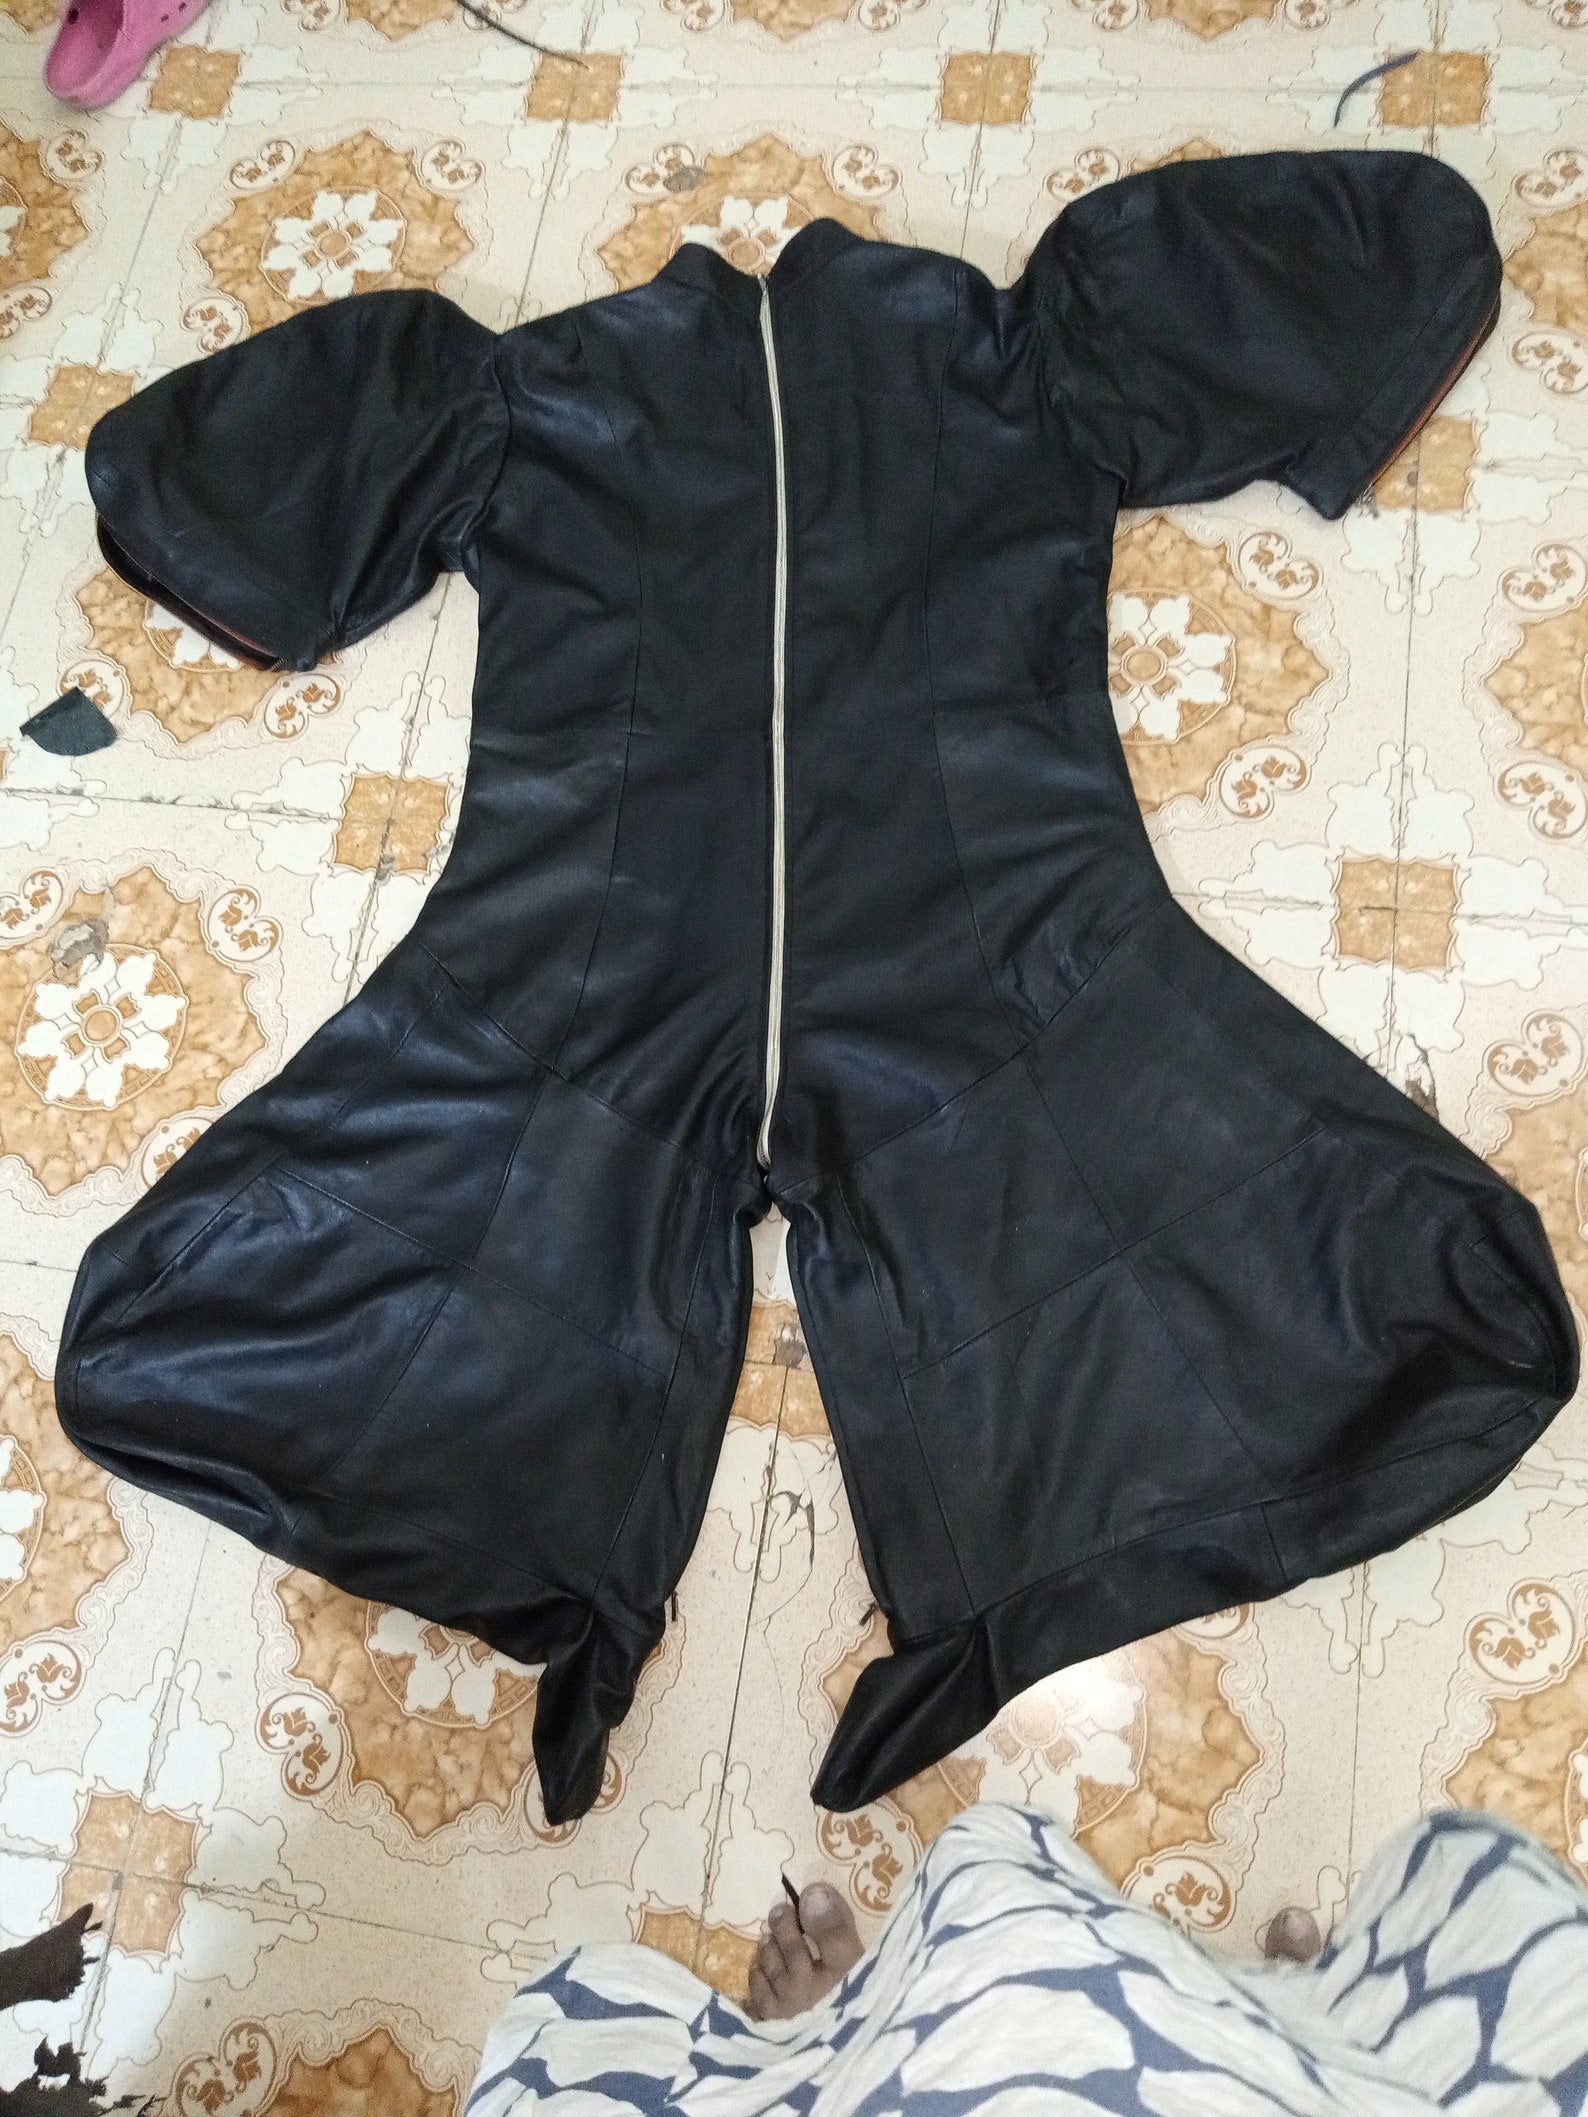 Genuine Leather Sleep sack Full Body Bondage Bag bitch suit | Etsy